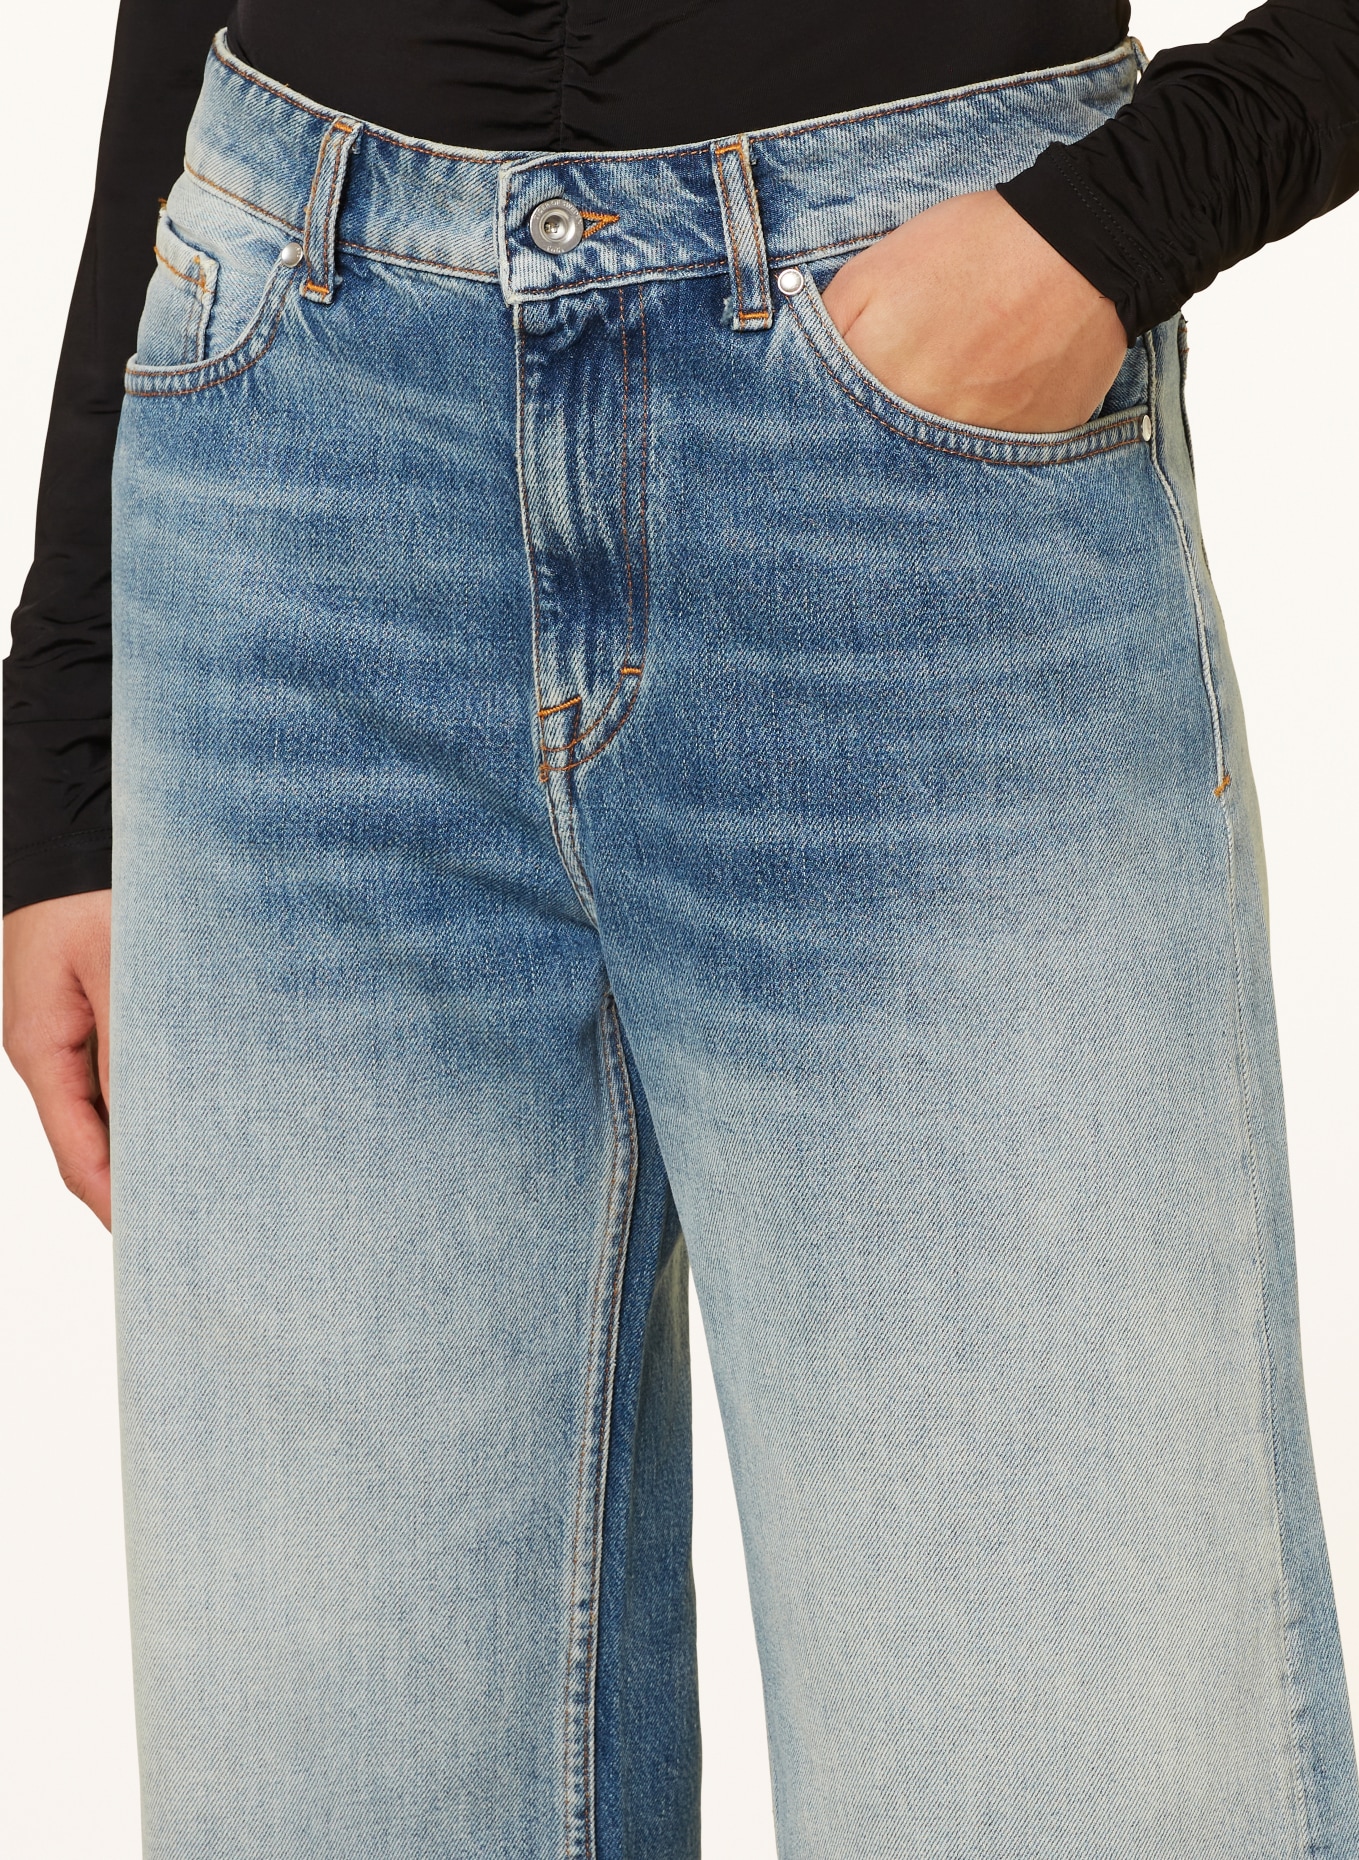 TIGER OF SWEDEN Straight jeans LOORNA, Color: 200 Light blue (Image 5)